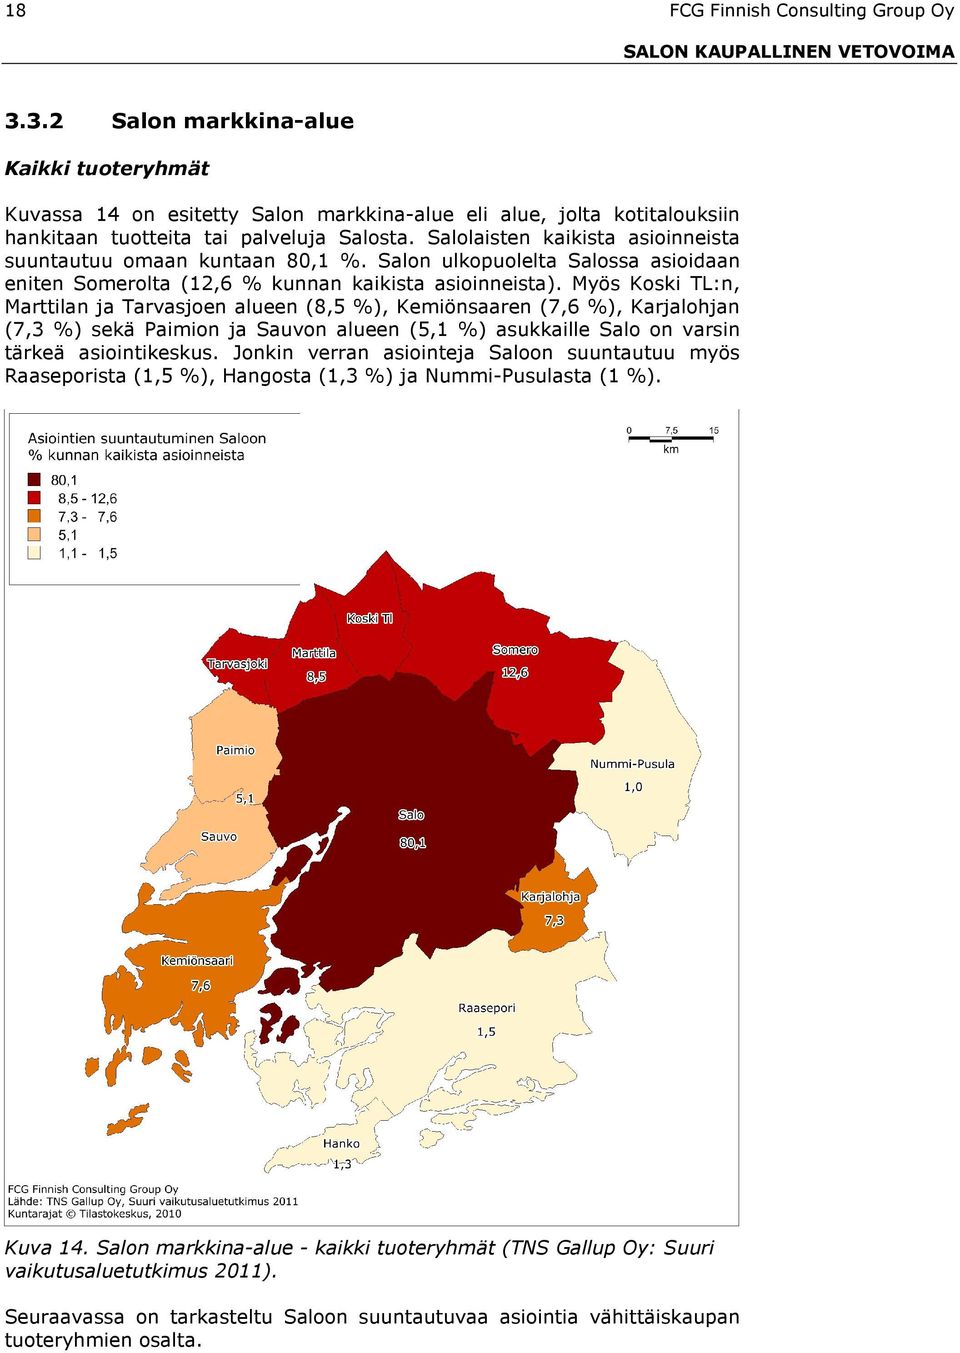 Myös Koski TL:n, Marttilan ja Tarvasjoen alueen (8,5 %), Kemiönsaaren (7,6 %), Karjalohjan (7,3 %) sekä Paimion ja Sauvon alueen (5,1 %) asukkaille Salo on varsin tärkeä asiointikeskus.